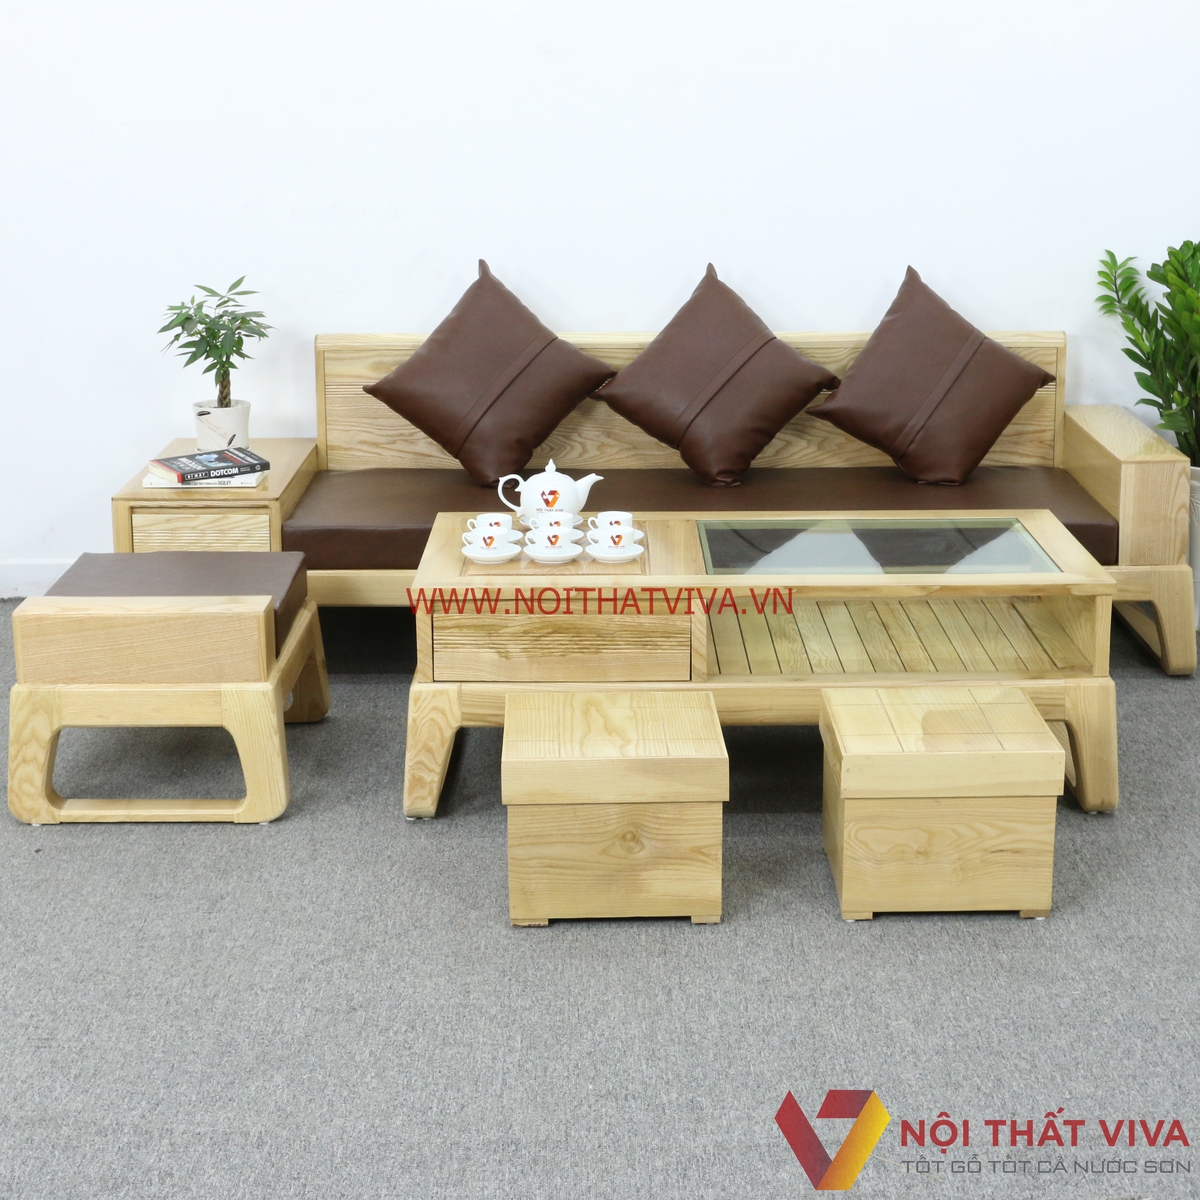 Phòng khách 20m2 không quá rộng vẫn hoàn toàn đủ để tạo nên không gian sống tiện nghi, đồng thời thể hiện sự sang trọng và đẳng cấp. Với  những mẫu bàn ghế gỗ phòng khách 20m2 đa dạng và phong phú, bạn hoàn toàn có thể tìm thấy bộ sản phẩm phù hợp với sở thích của mình.